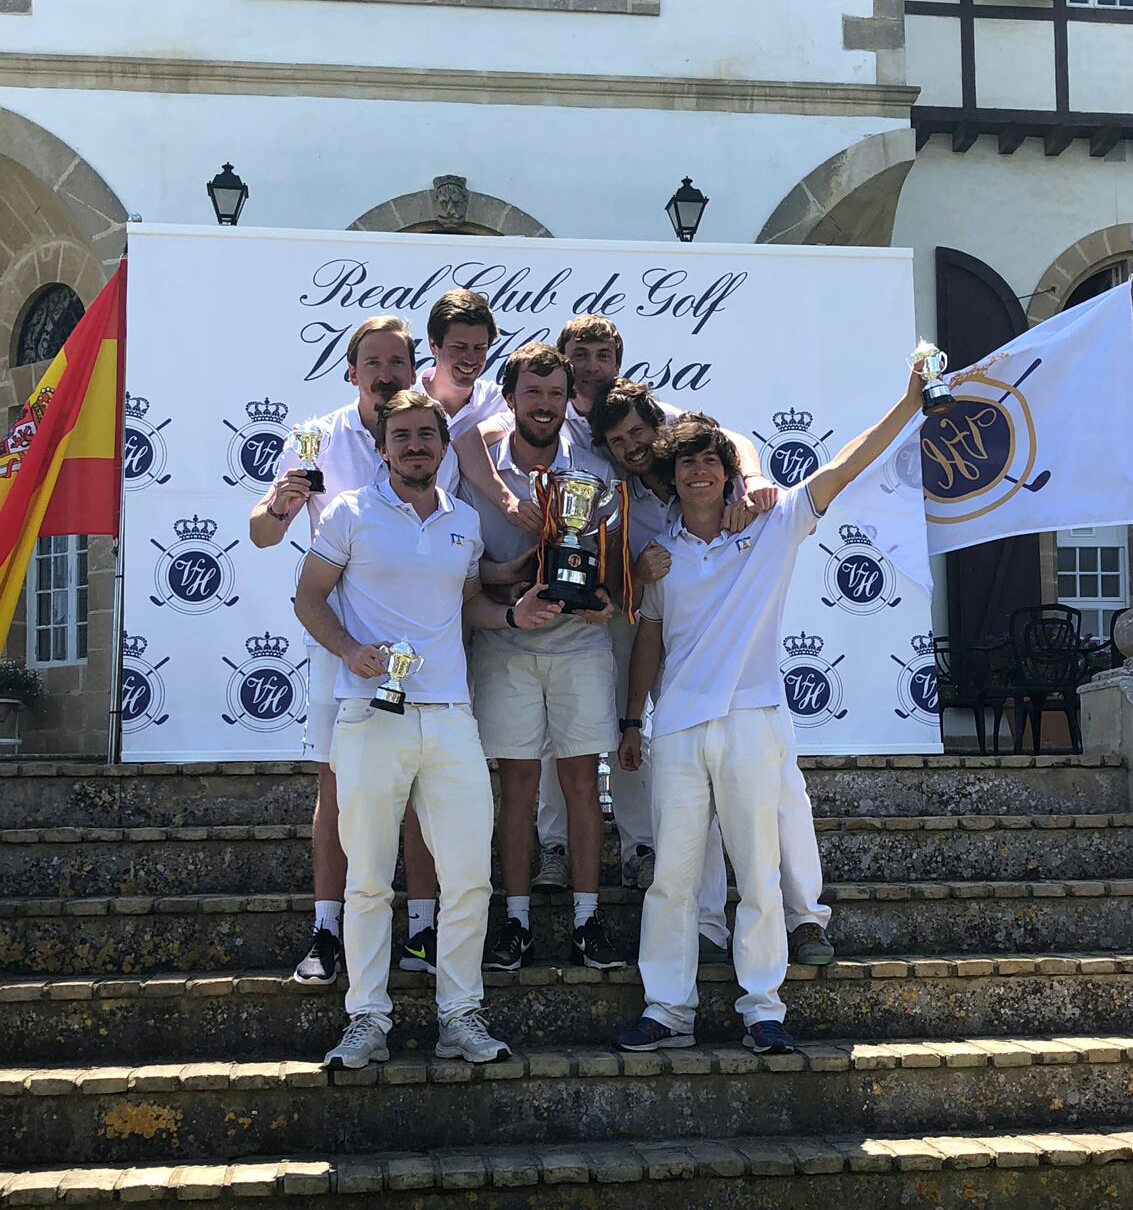 La R Soc Hípica Española gana la III Copa de España